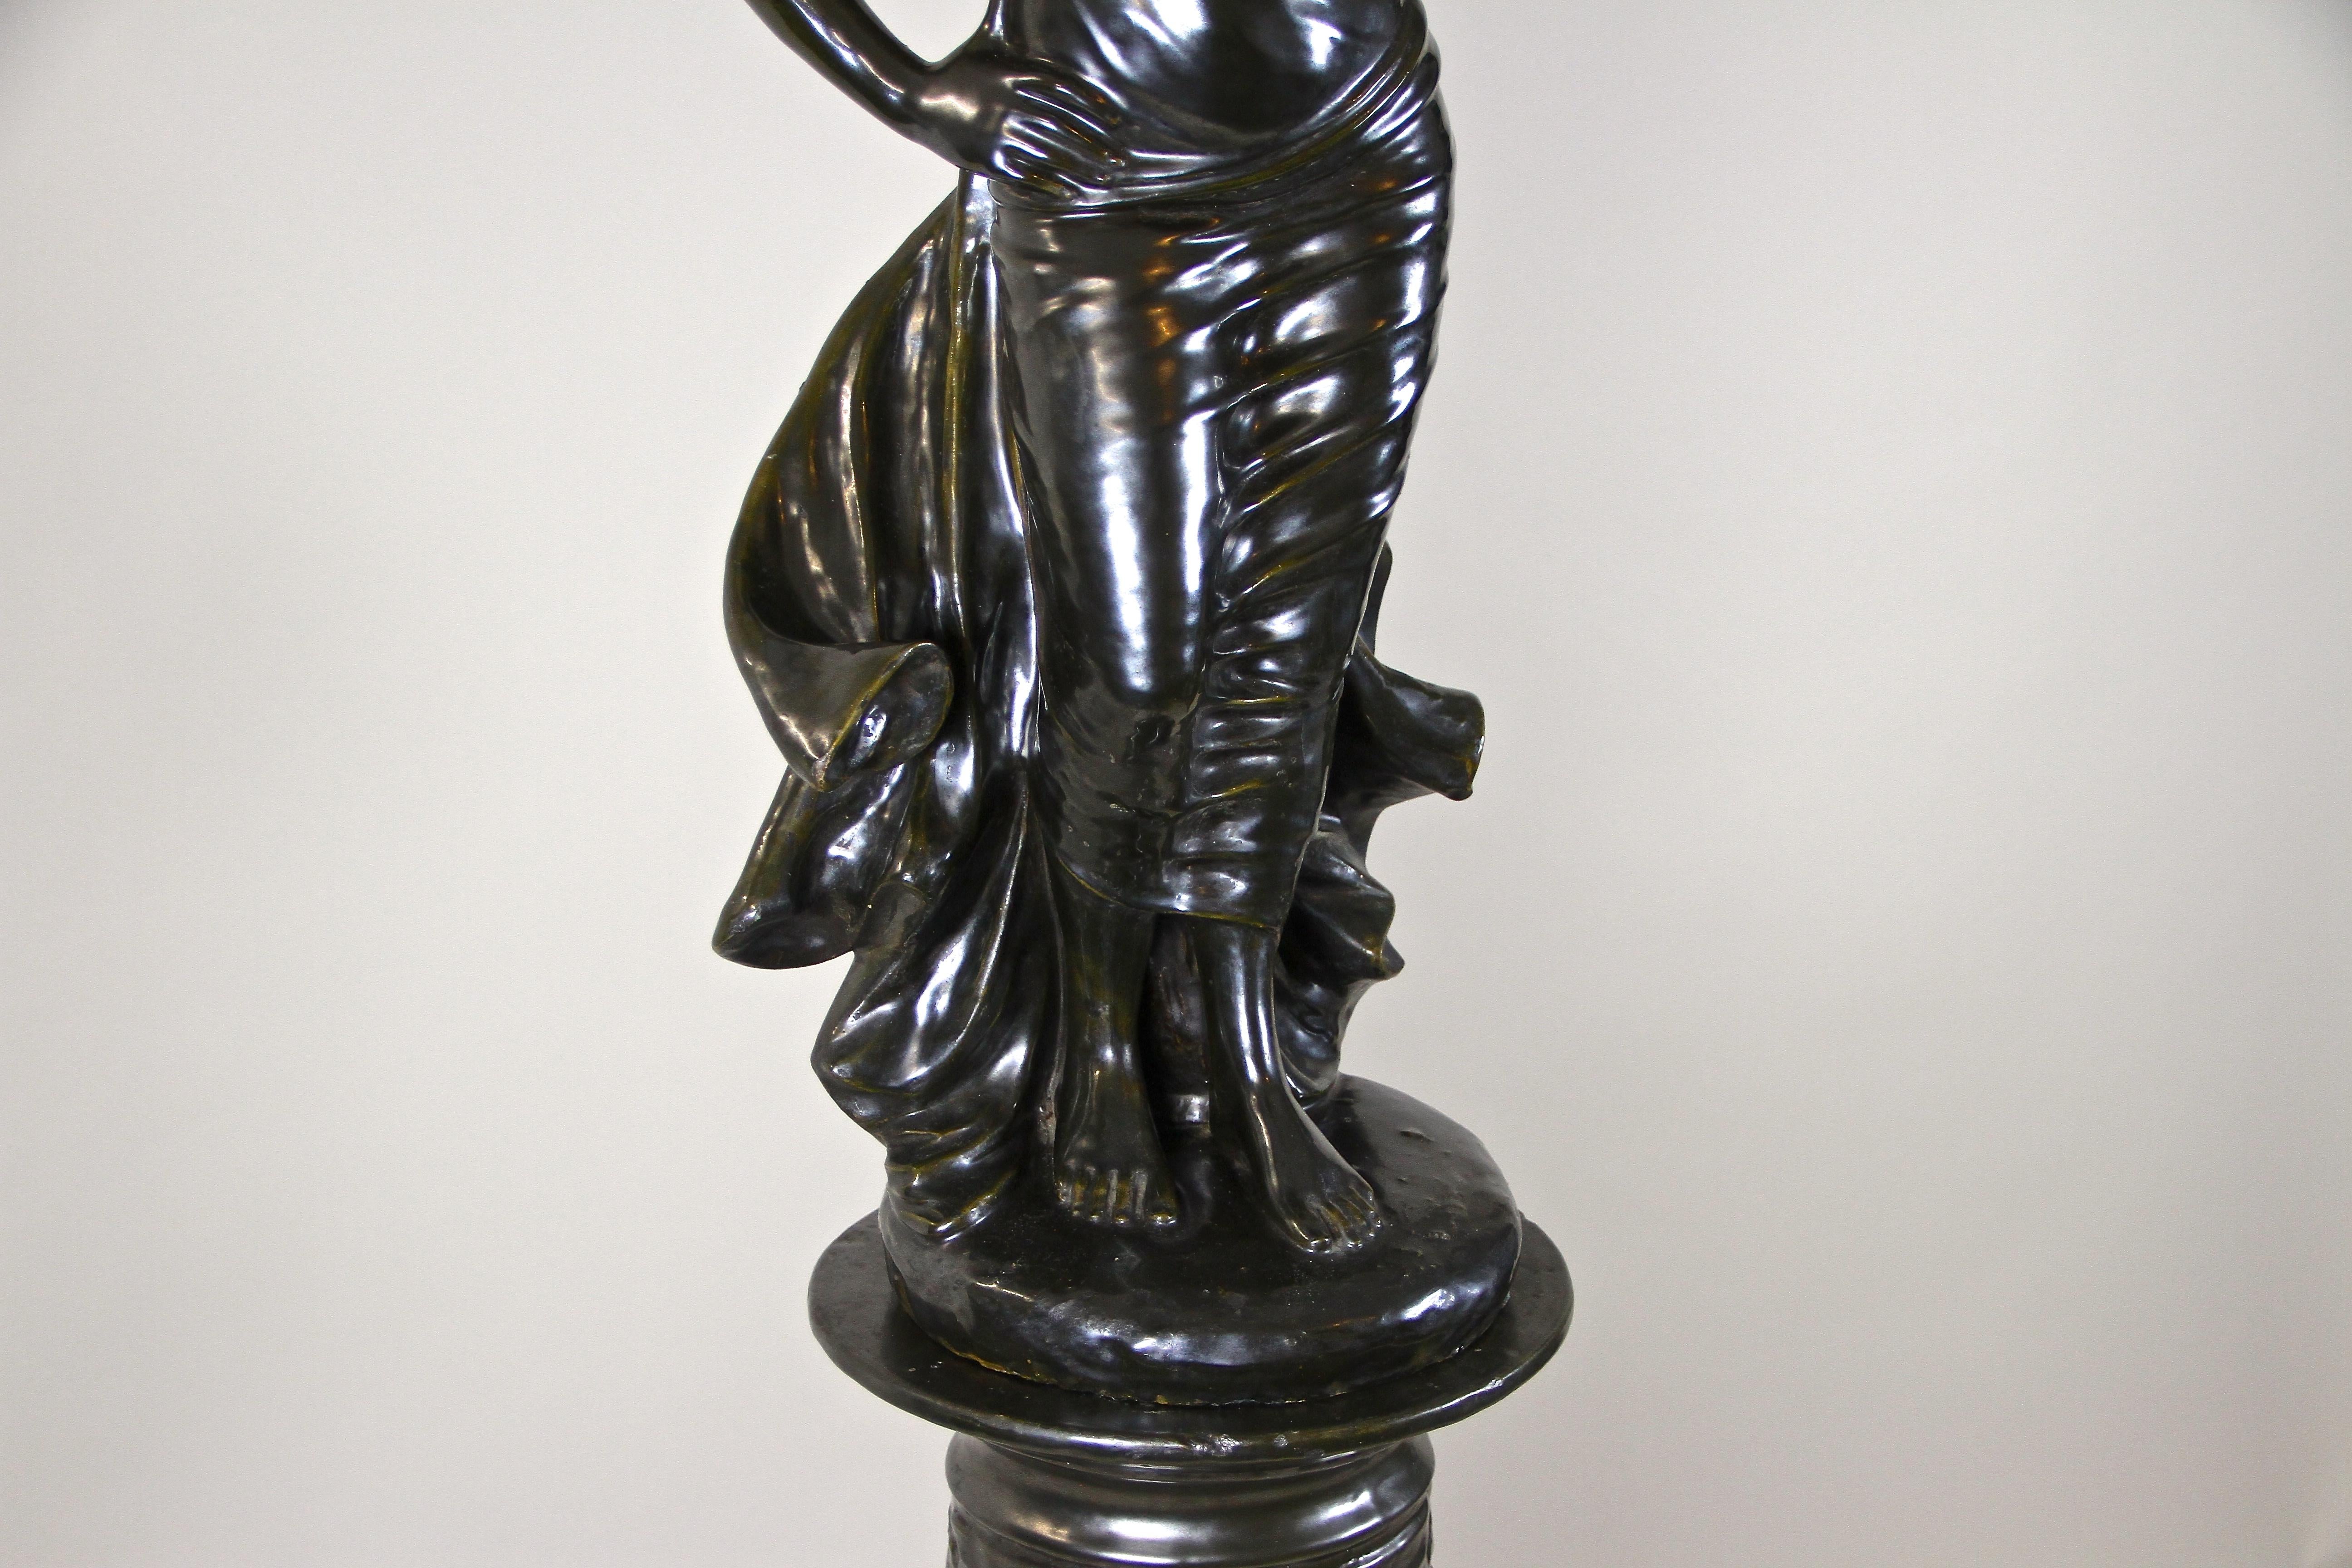 20th Century Figurative Art Nouveau Ceramic Statue on Column, Bronze Look, France, circa 1900